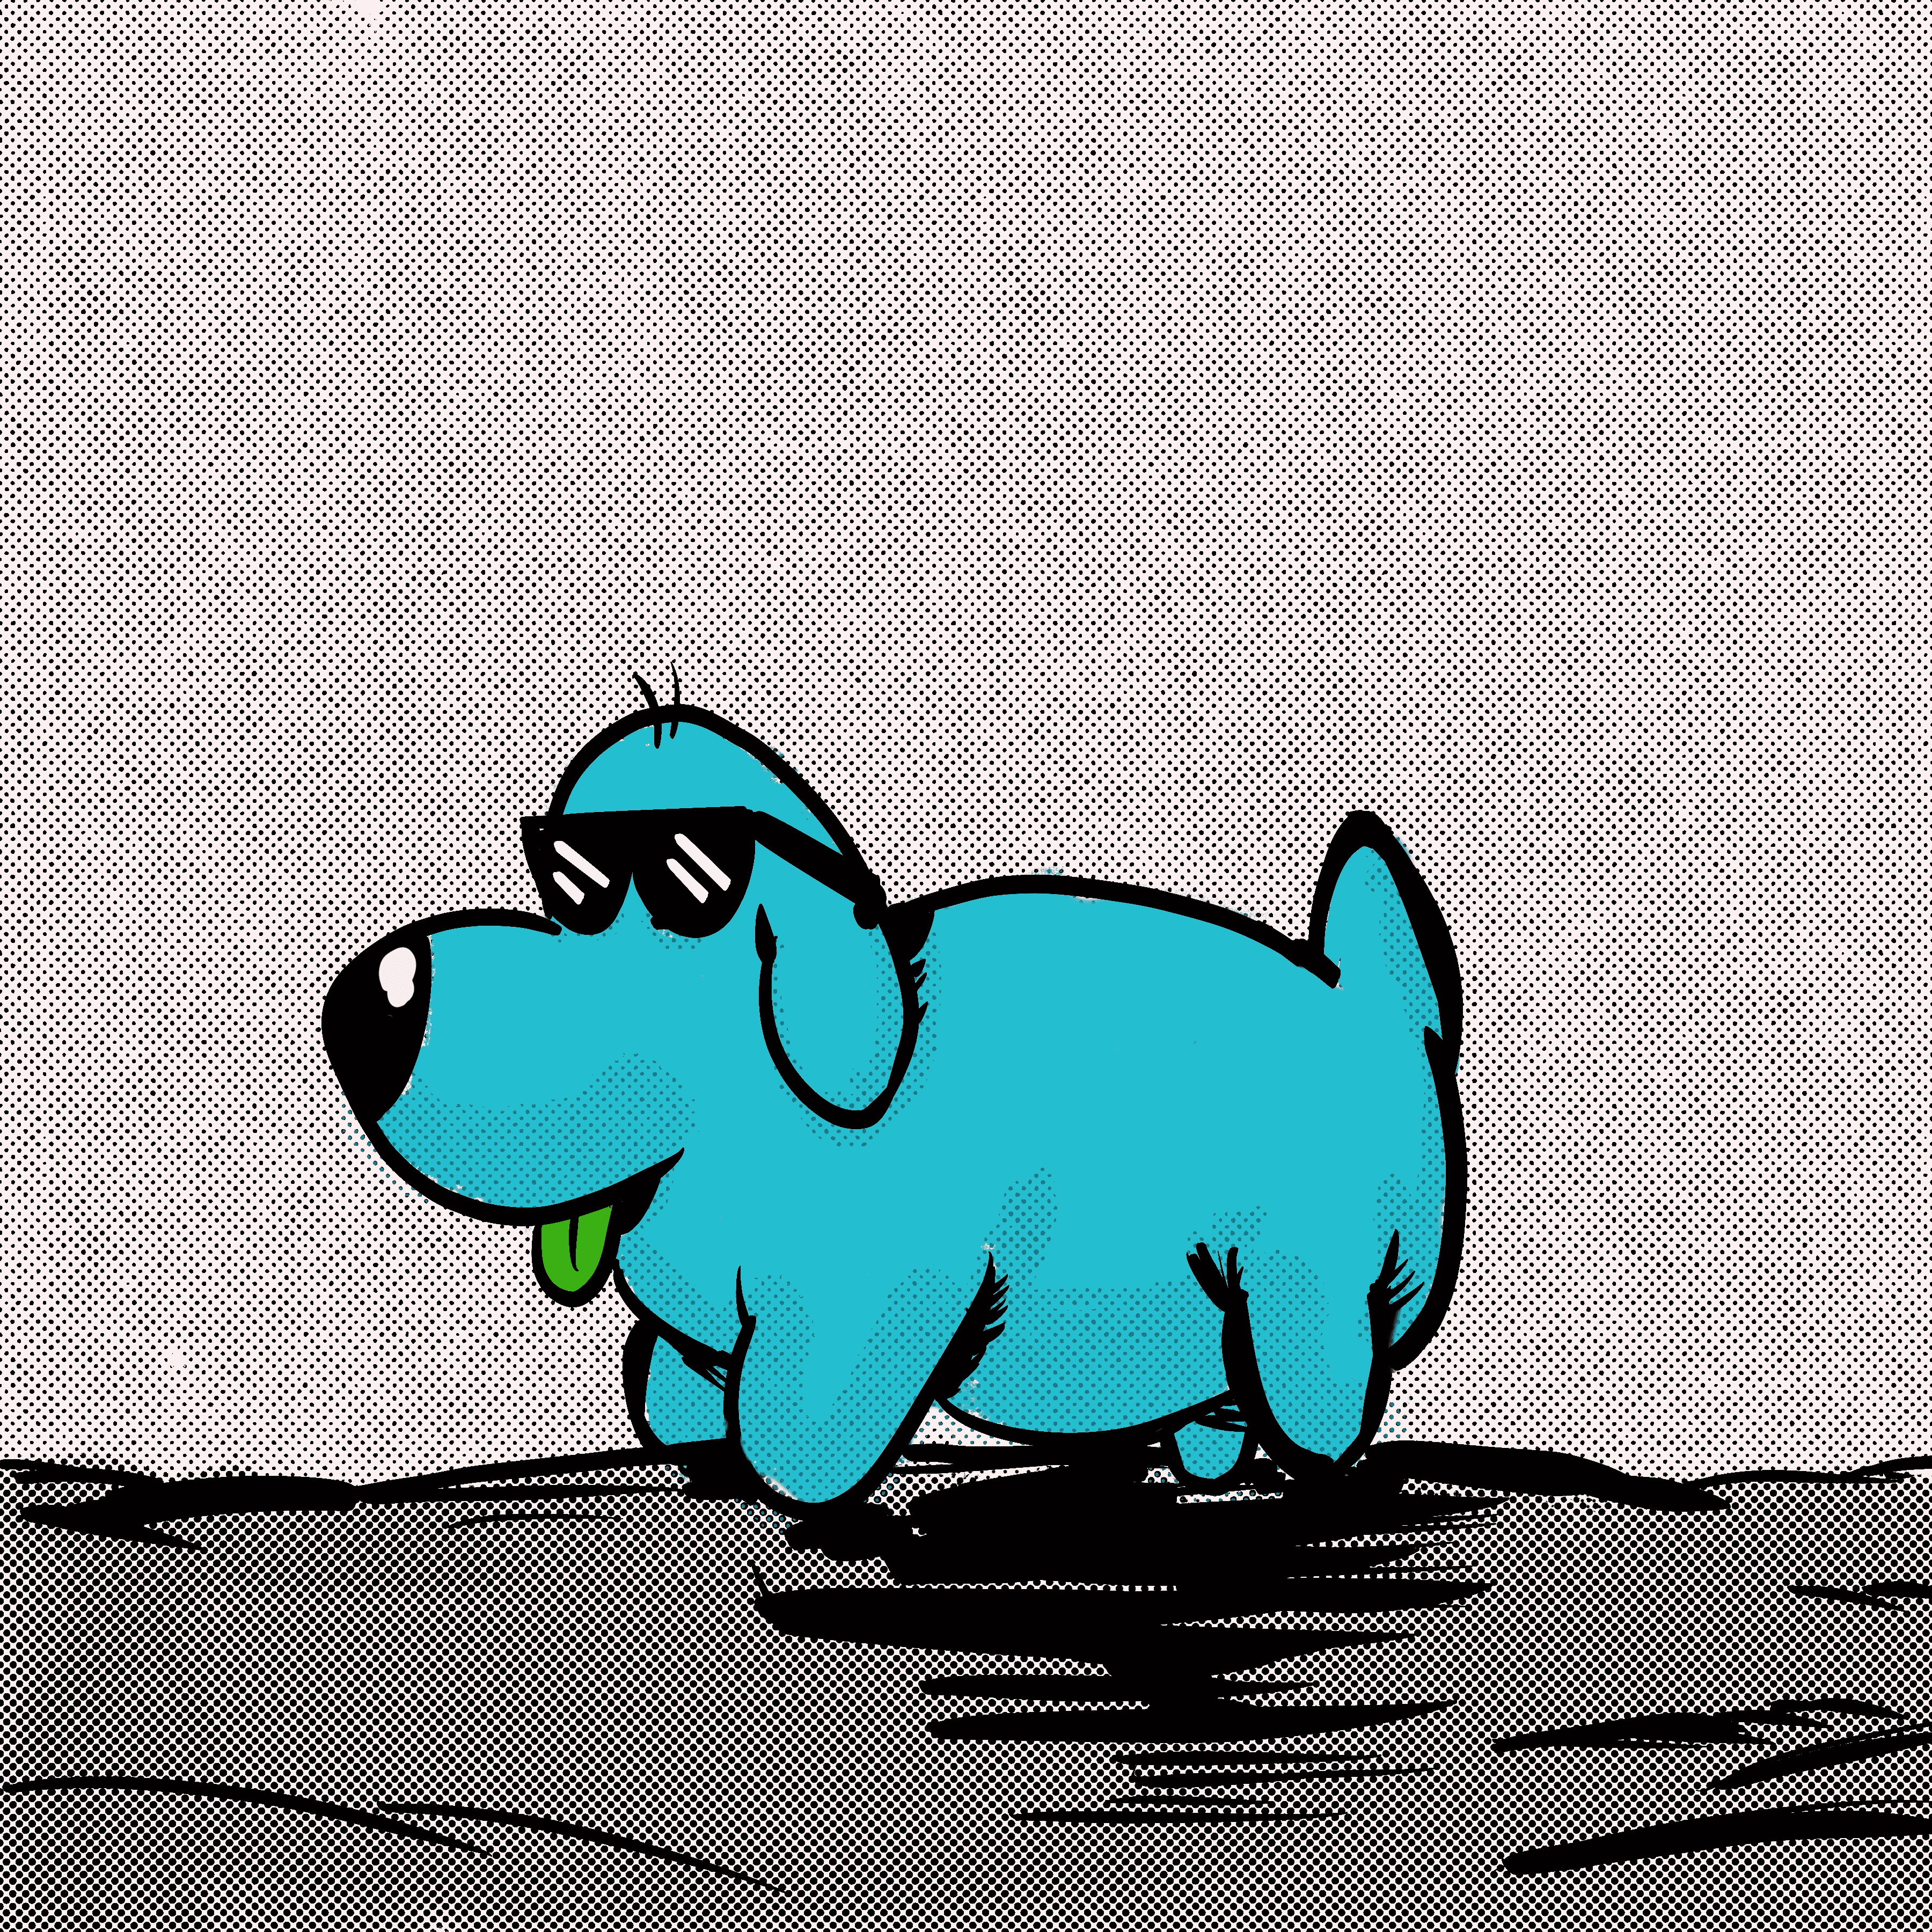 Spacetime Dog #7: Kewl Blu